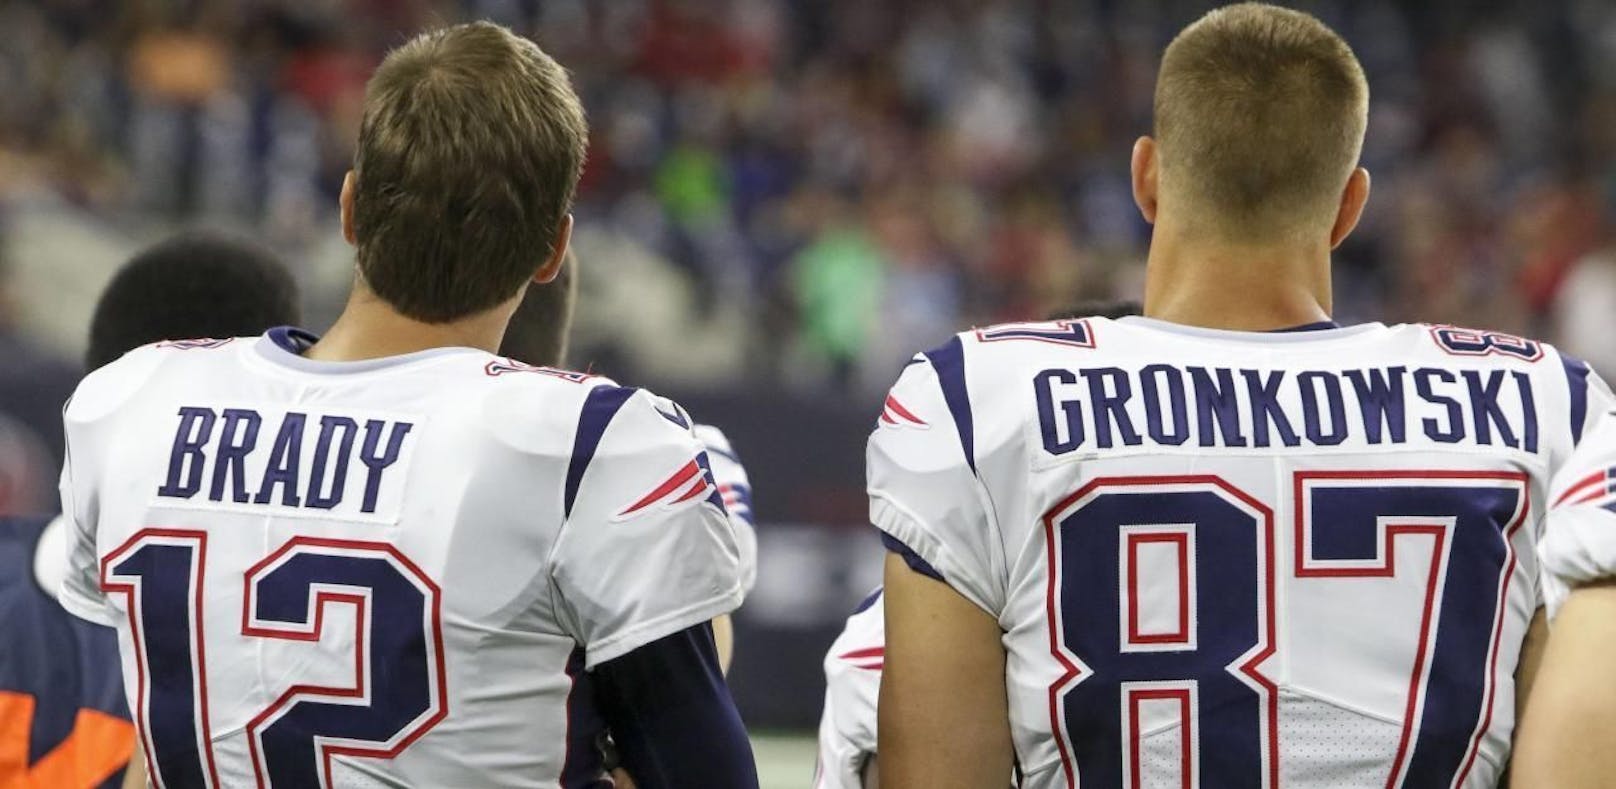 Tom Brady und Rob Gronkowski wollen noch eine Super Bowl gewinnen